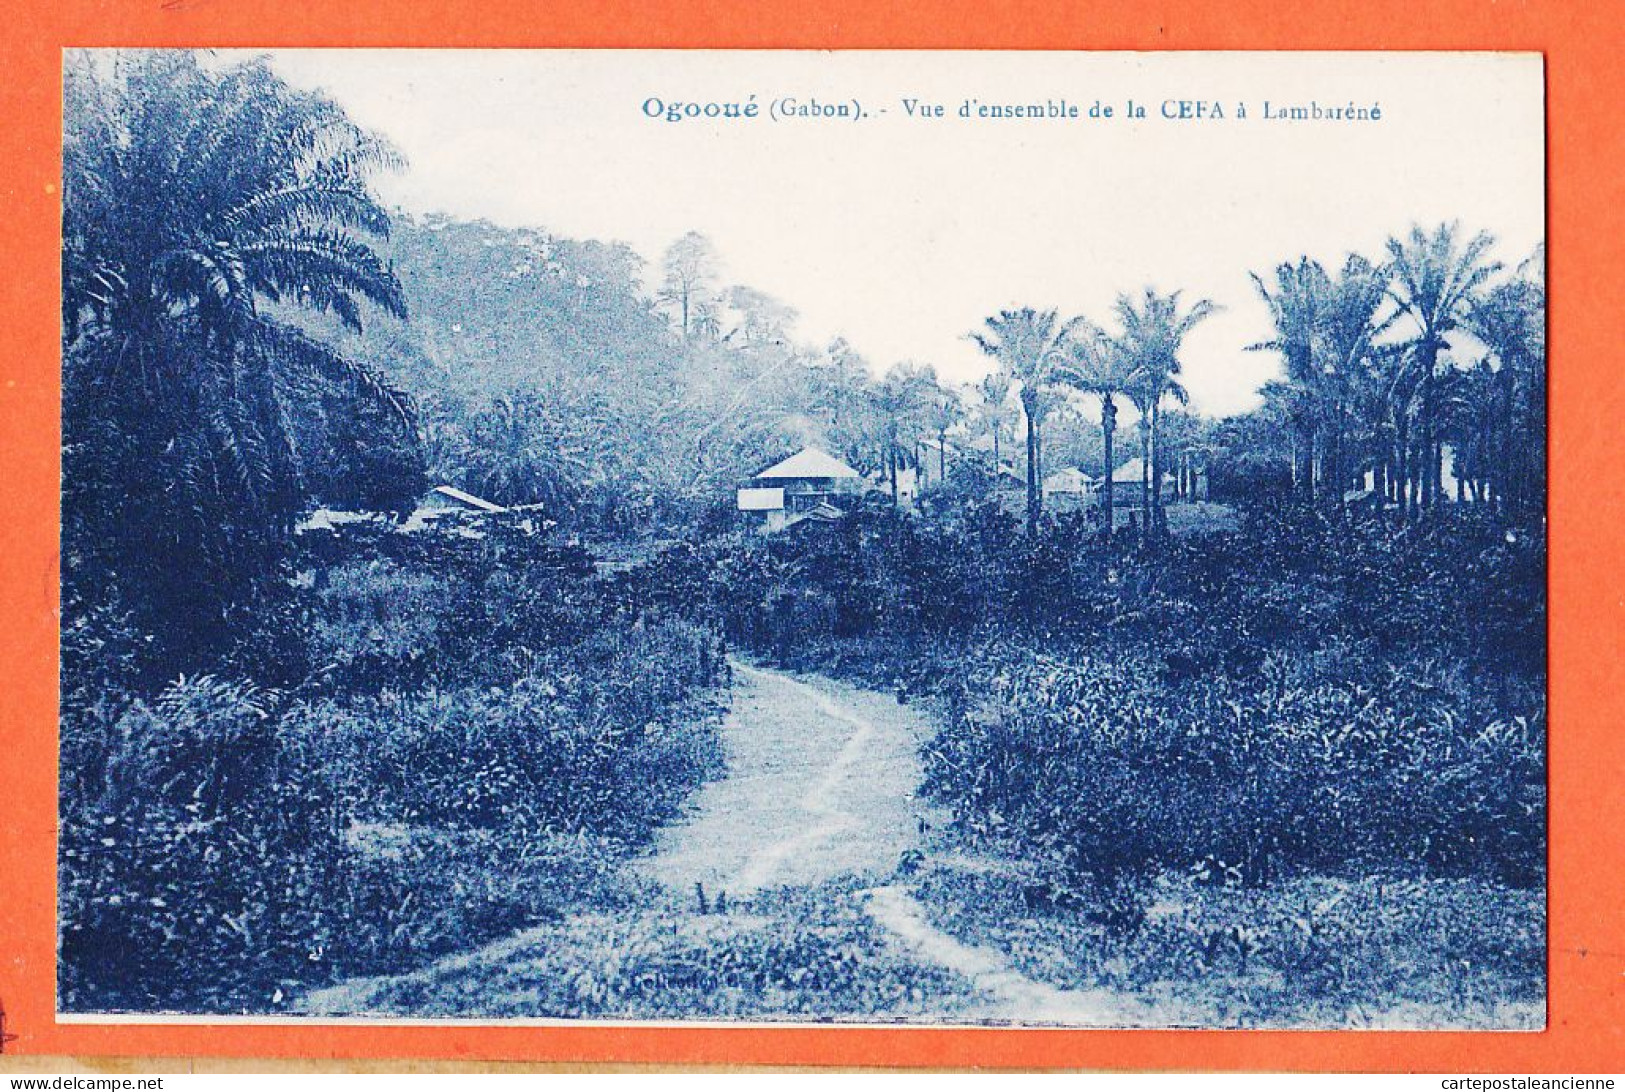 32757 / ⭐ OGOOUE (•◡•) Gabon ◉ Vue D'Ensemble De La CEFA à LAMBARENE 1920s ◉ Collection C.E.F.A CEFA  - Gabon